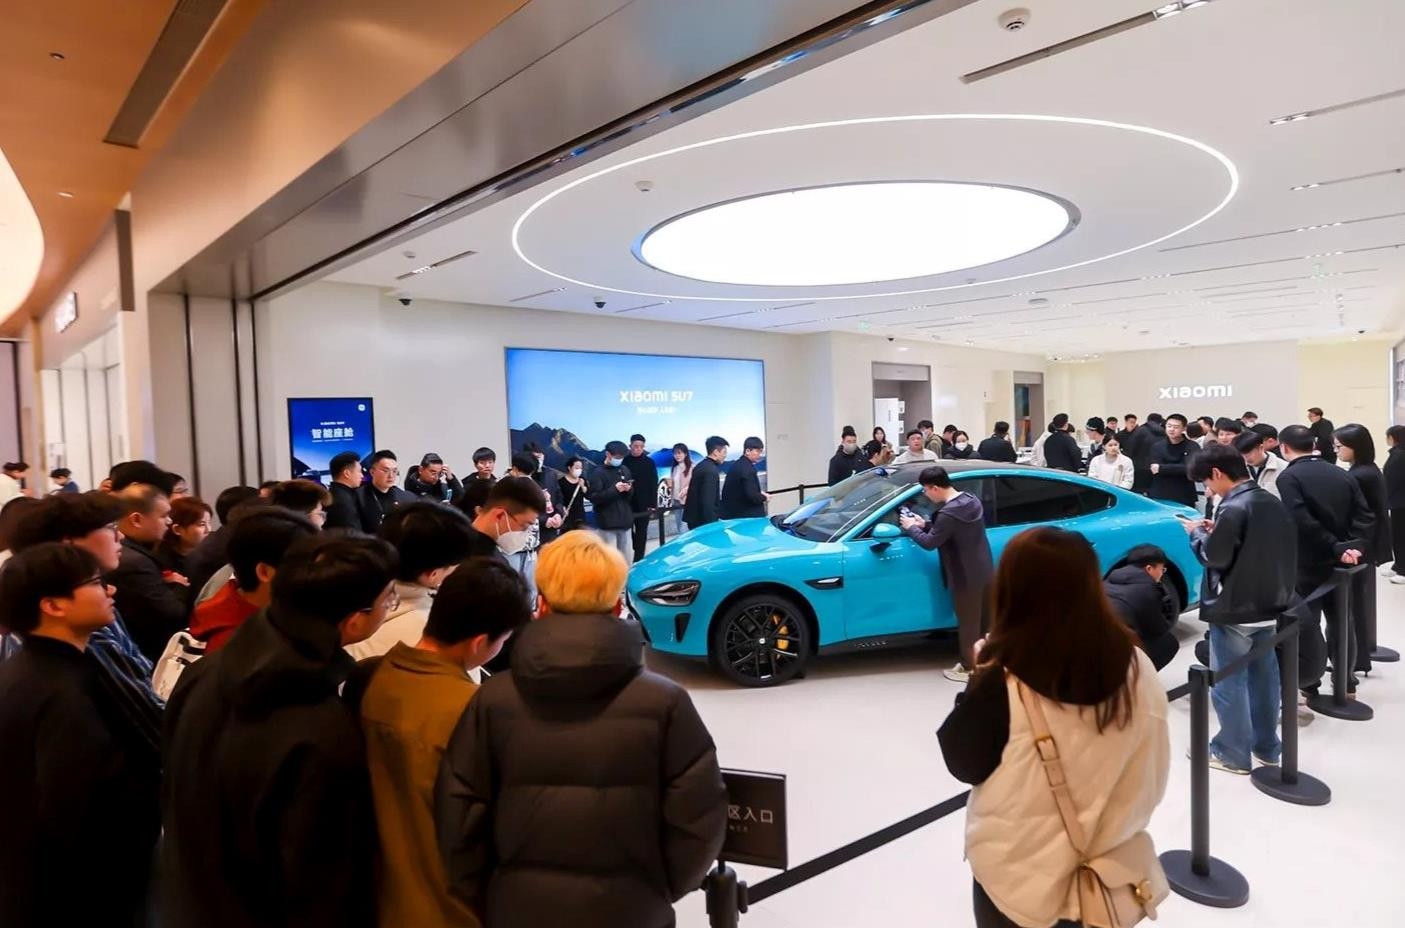 76 giây sản xuất ra một chiếc SU7, 27 phút mở bán đạt doanh số 50.000 xe - Đây là sự đáng sợ của một Xiaomi vừa 'chân ướt chân ráo' gia nhập thị trường ô tô điện - Ảnh 2.